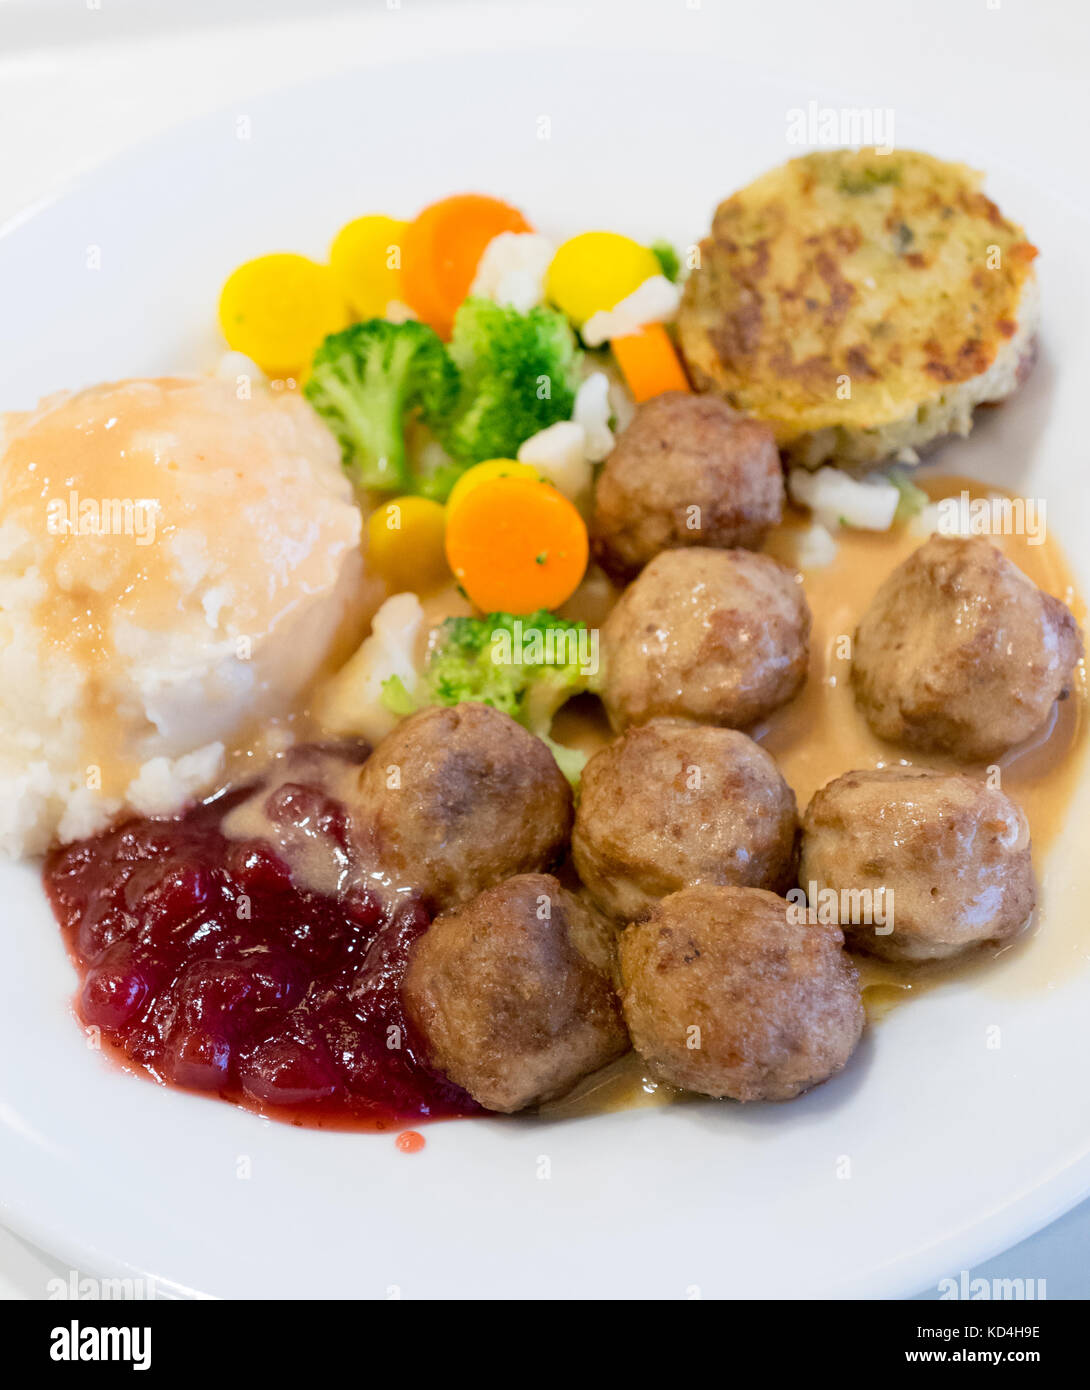 Ein Teller mit IKEA Fleischbällchen, Kartoffelpüree, Sahnesauce, Preiselbeersauce, gemischtem Gemüse und einem Kartoffel-Gemüse-Medaillon (grönsakskaka). Stockfoto